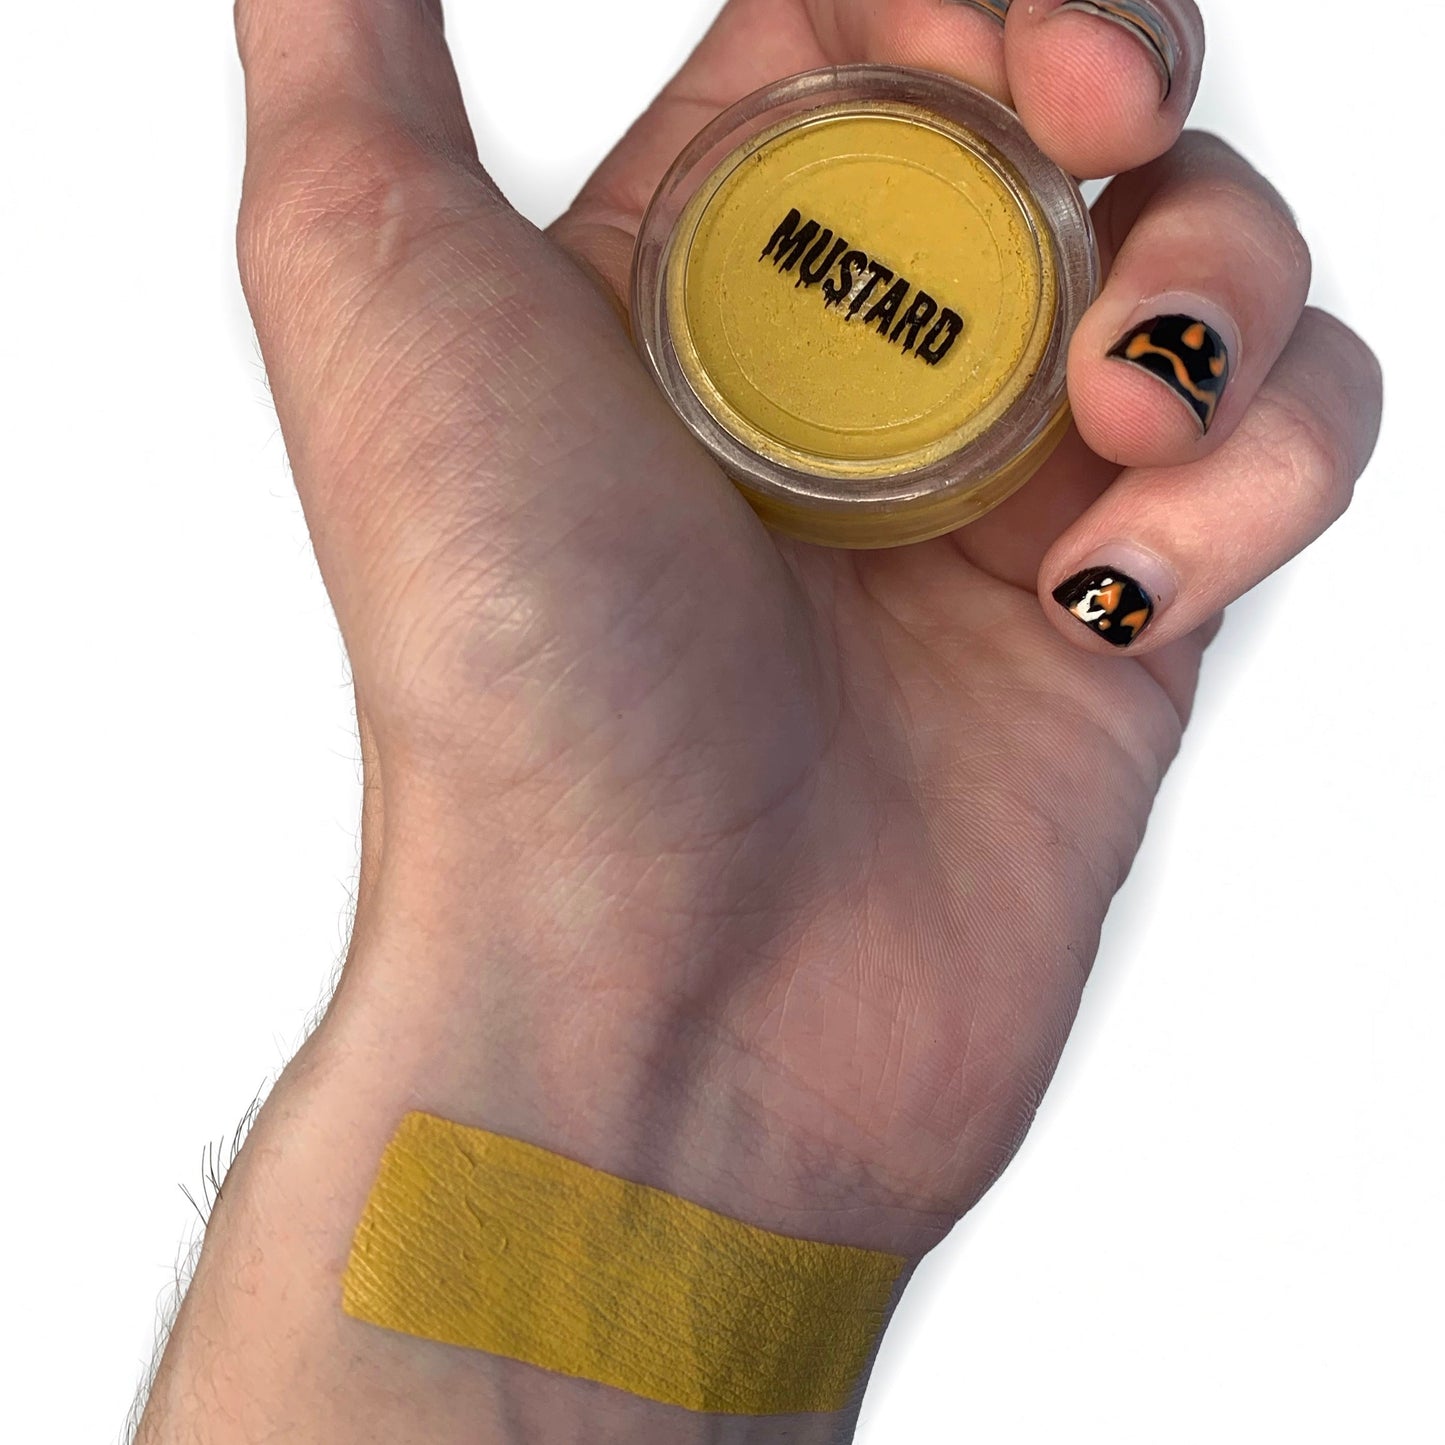 "Mustard" Hydro Liner